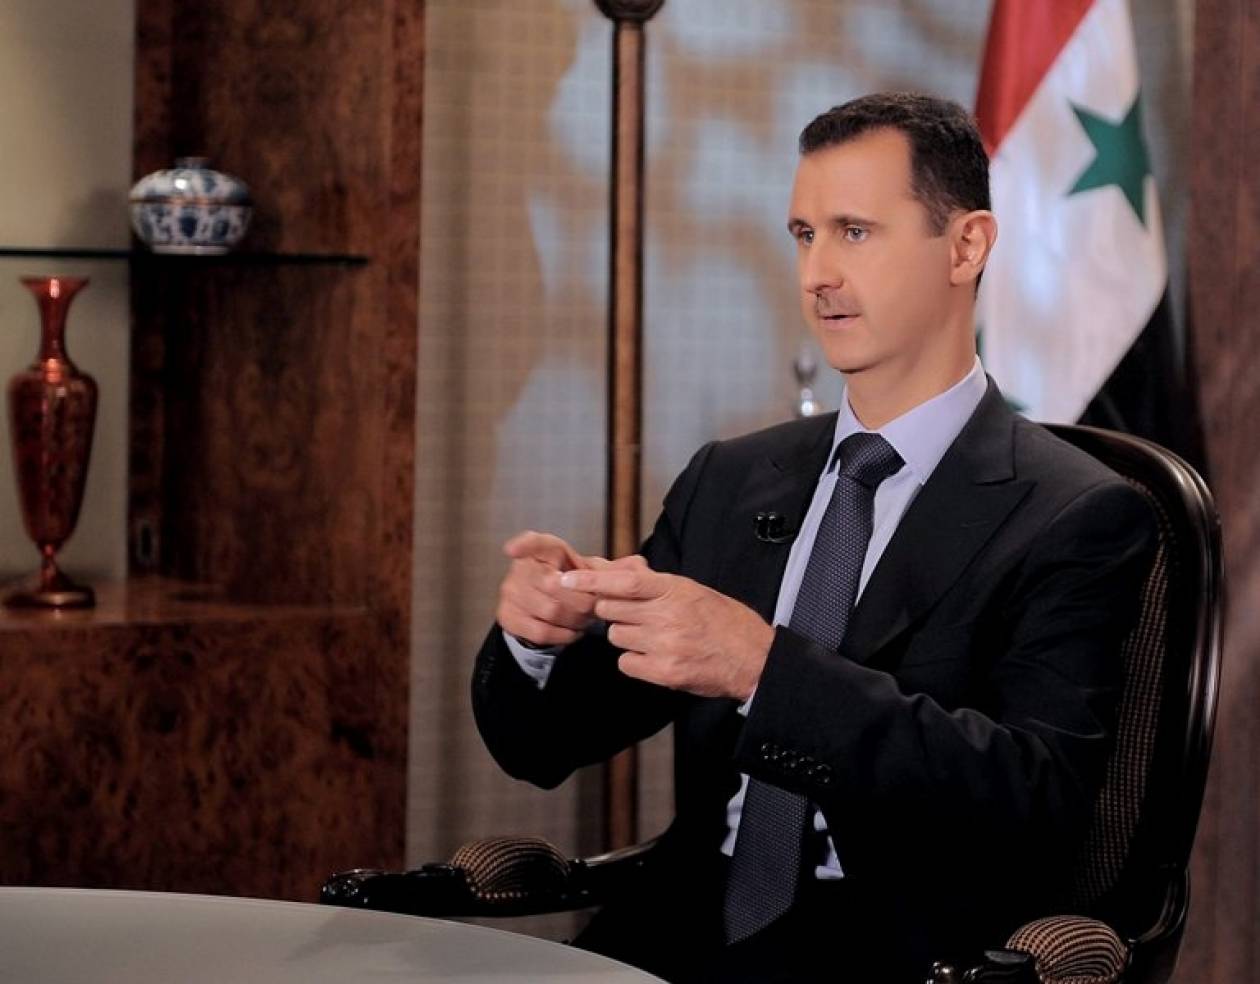 Άσαντ: Δεν θα έχω την ίδια τύχη με τον Καντάφι